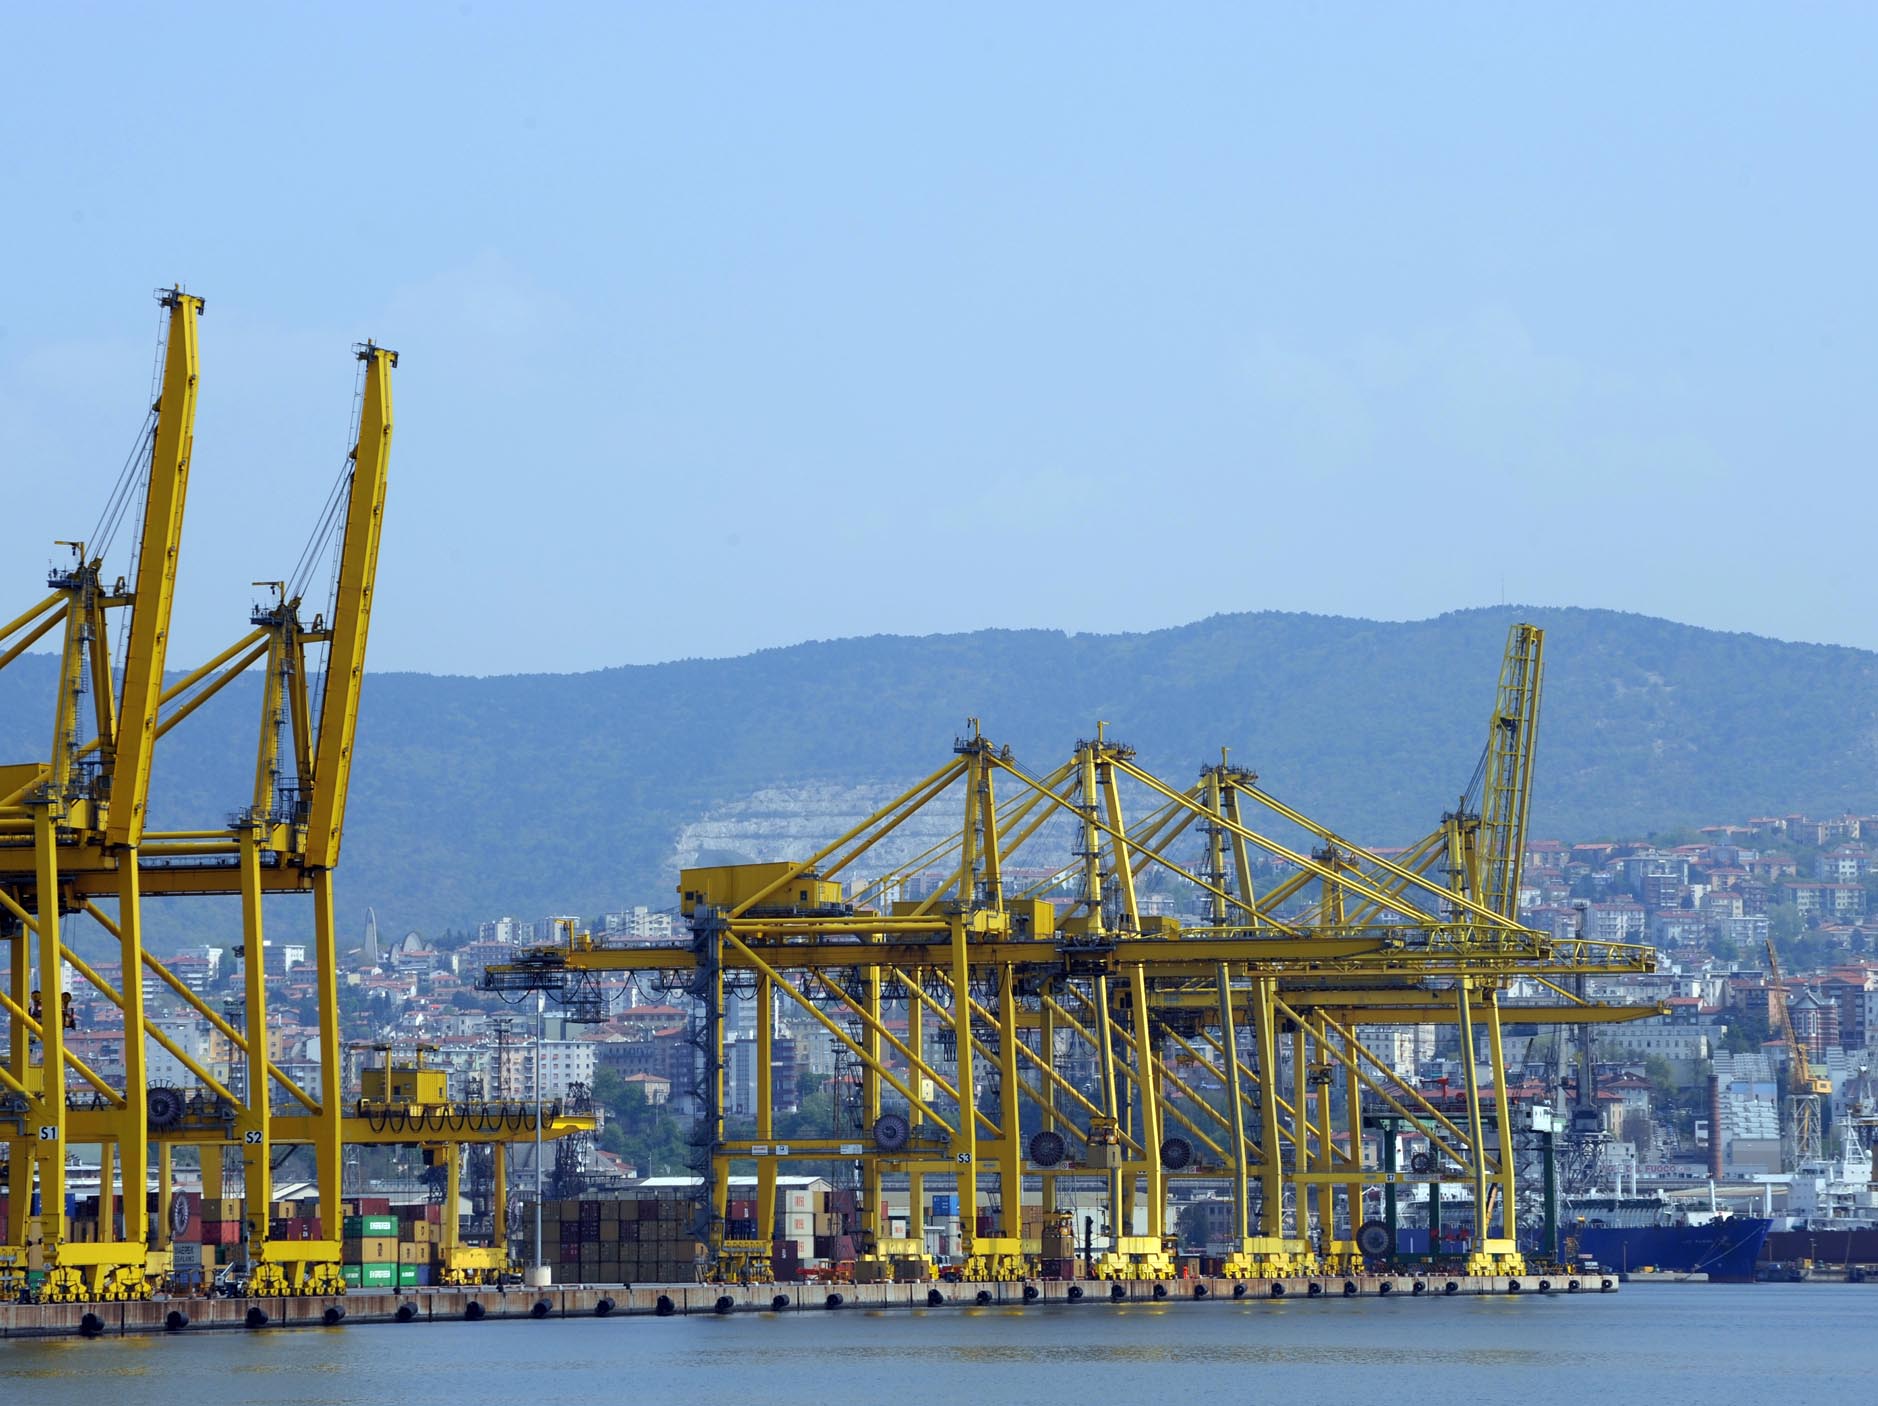 Porto di Trieste: terminato il progetto di modifica dell’impianto fotovoltaico